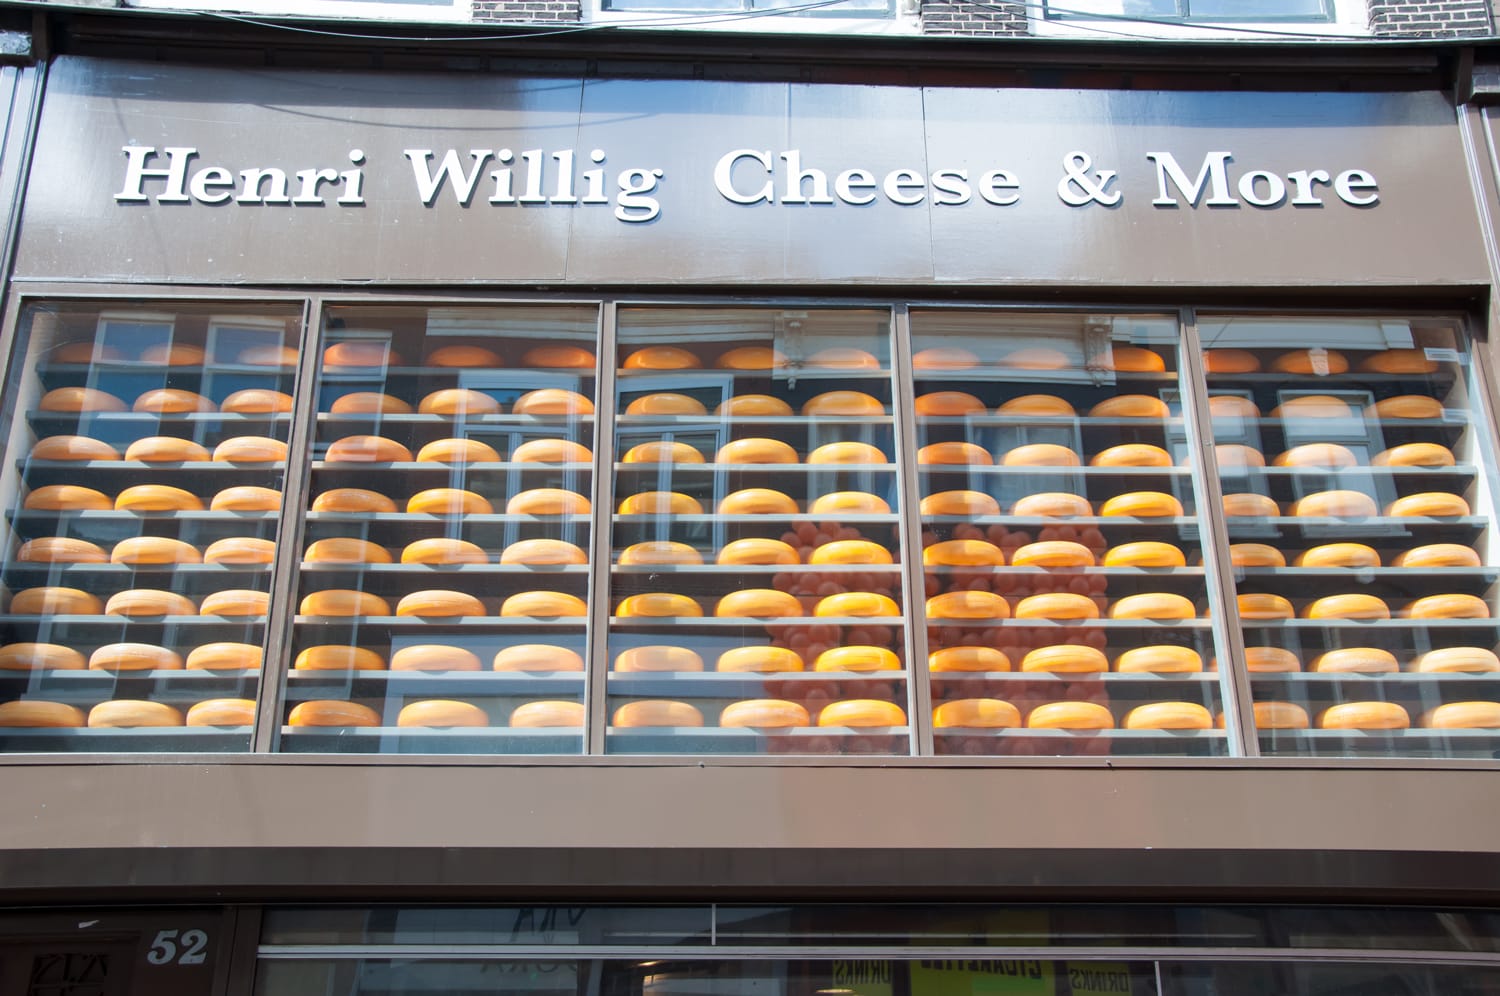  Διάφορο ολλανδικό τυρί που εκτίθεται προς πώληση σε τοπικό κατάστημα στο Άμστερνταμ.